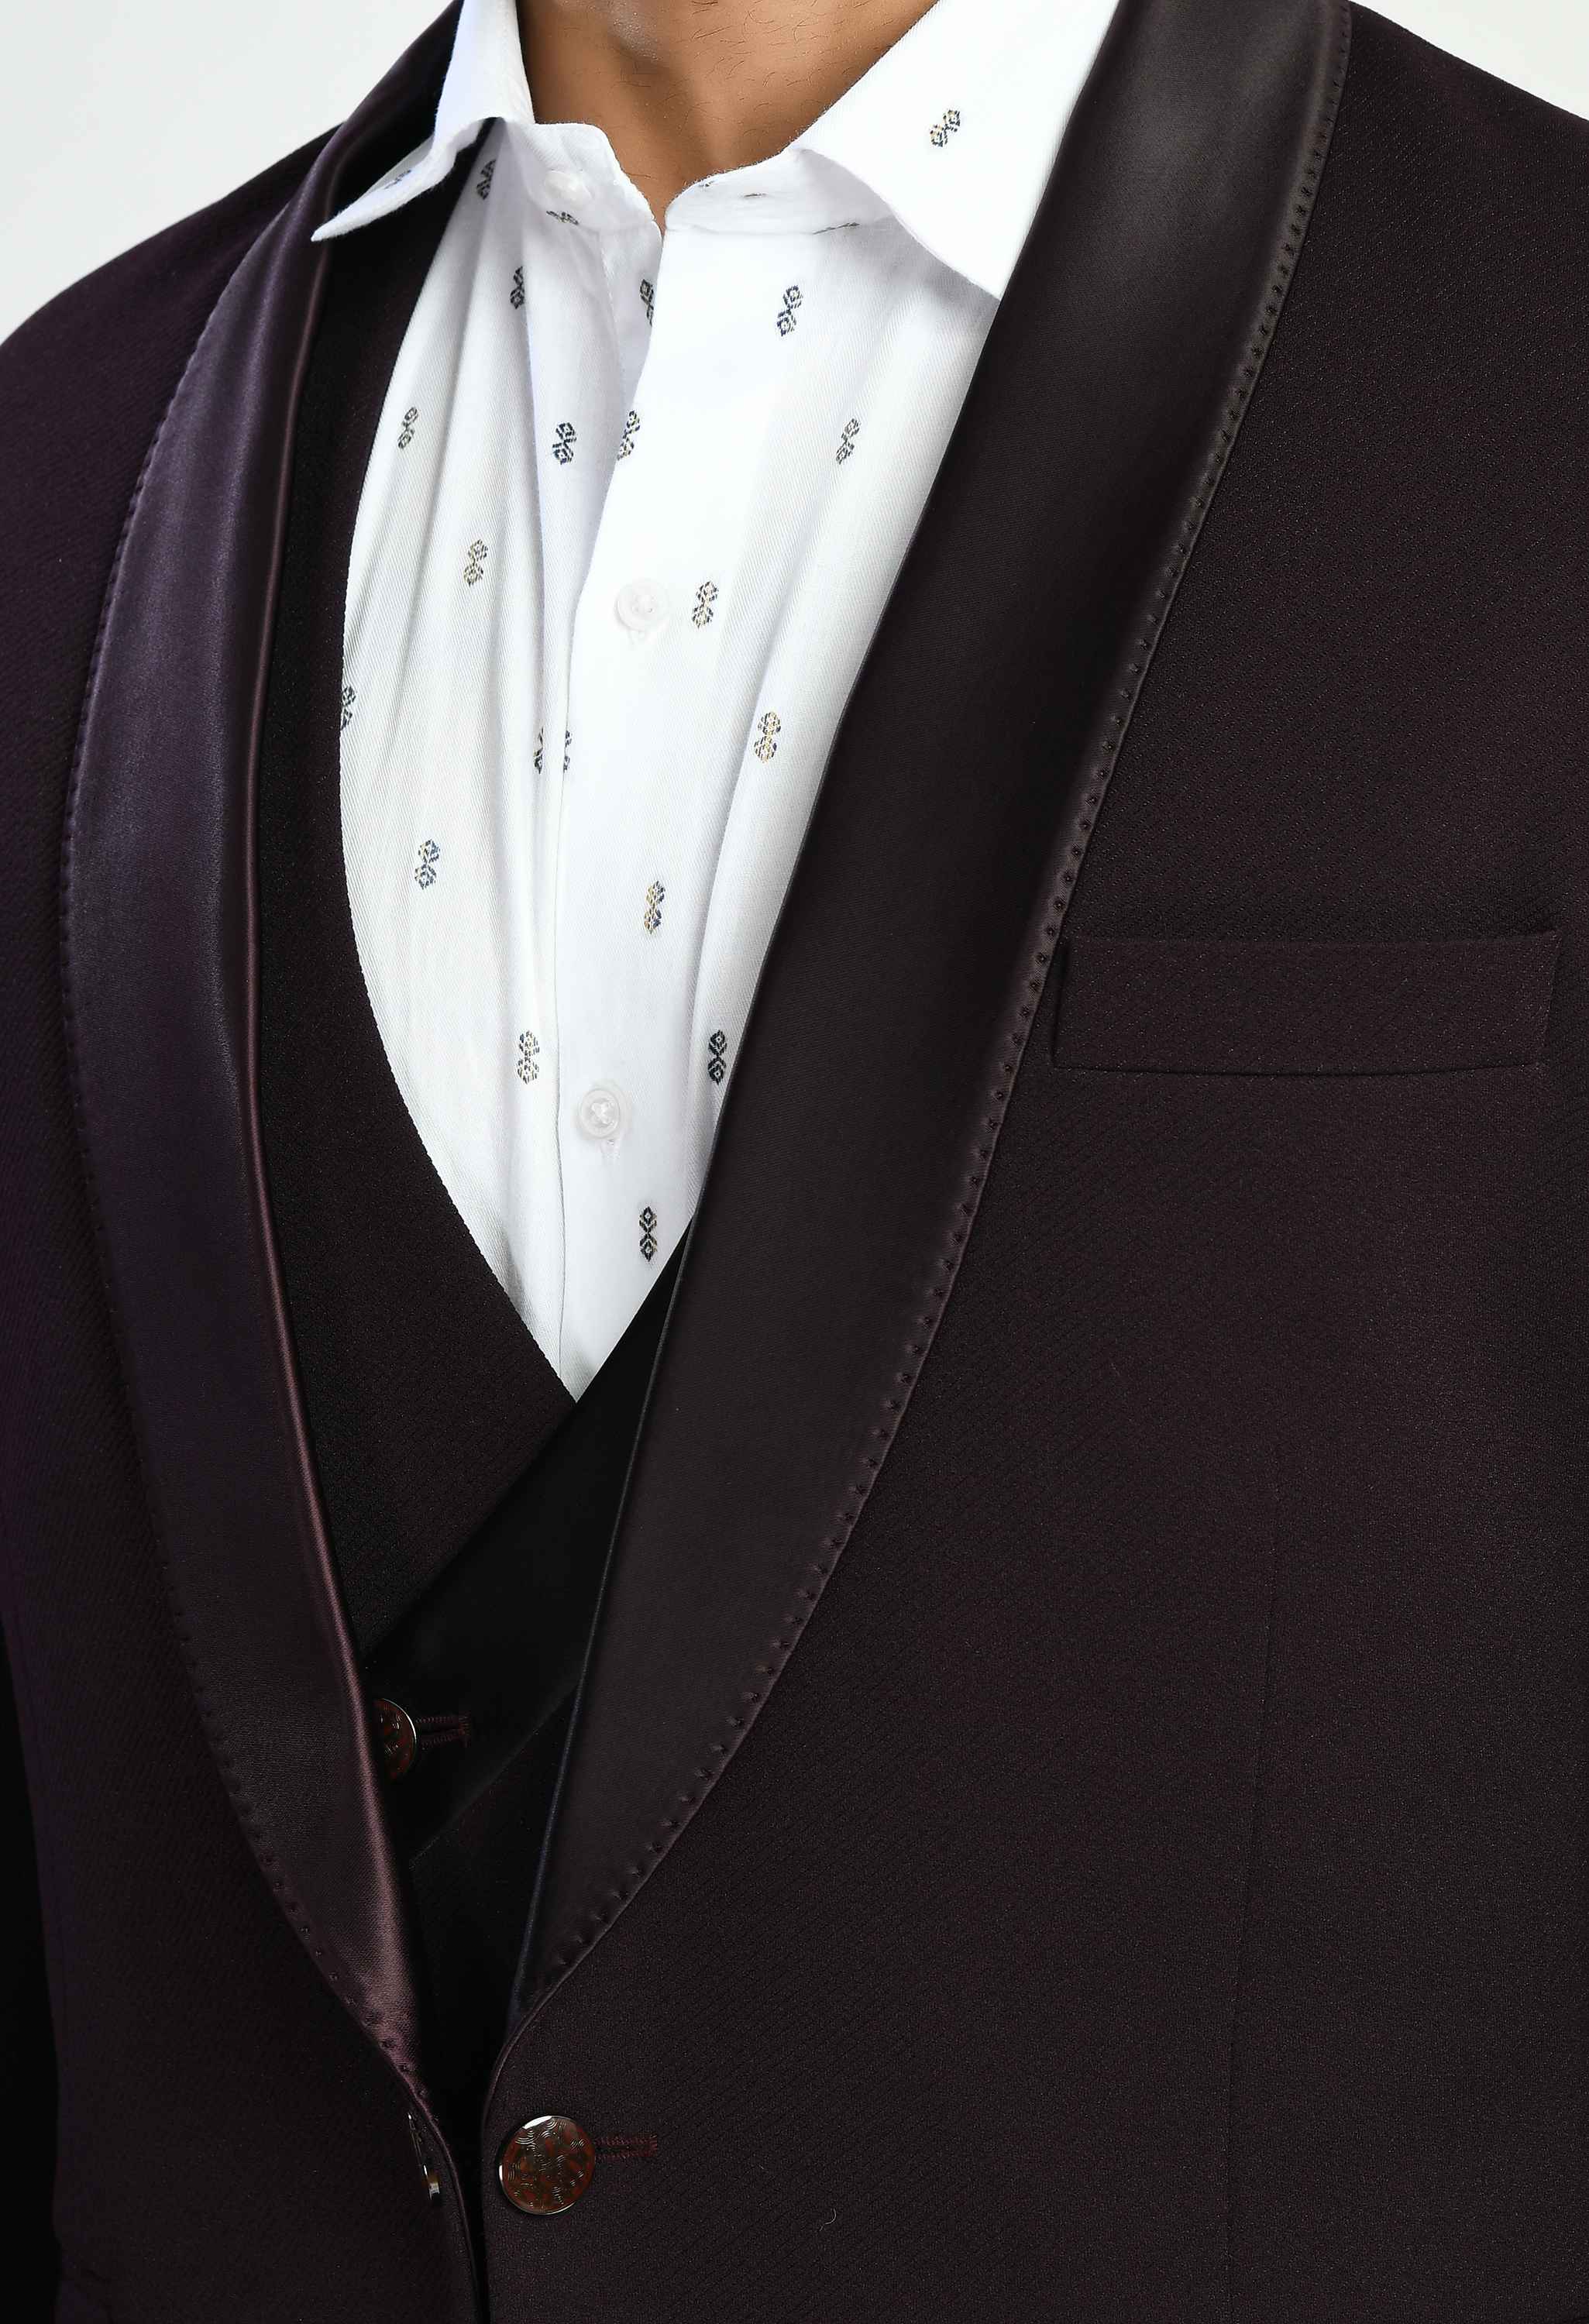 Men's Tuxedo Slim Fit Wine Suit Set